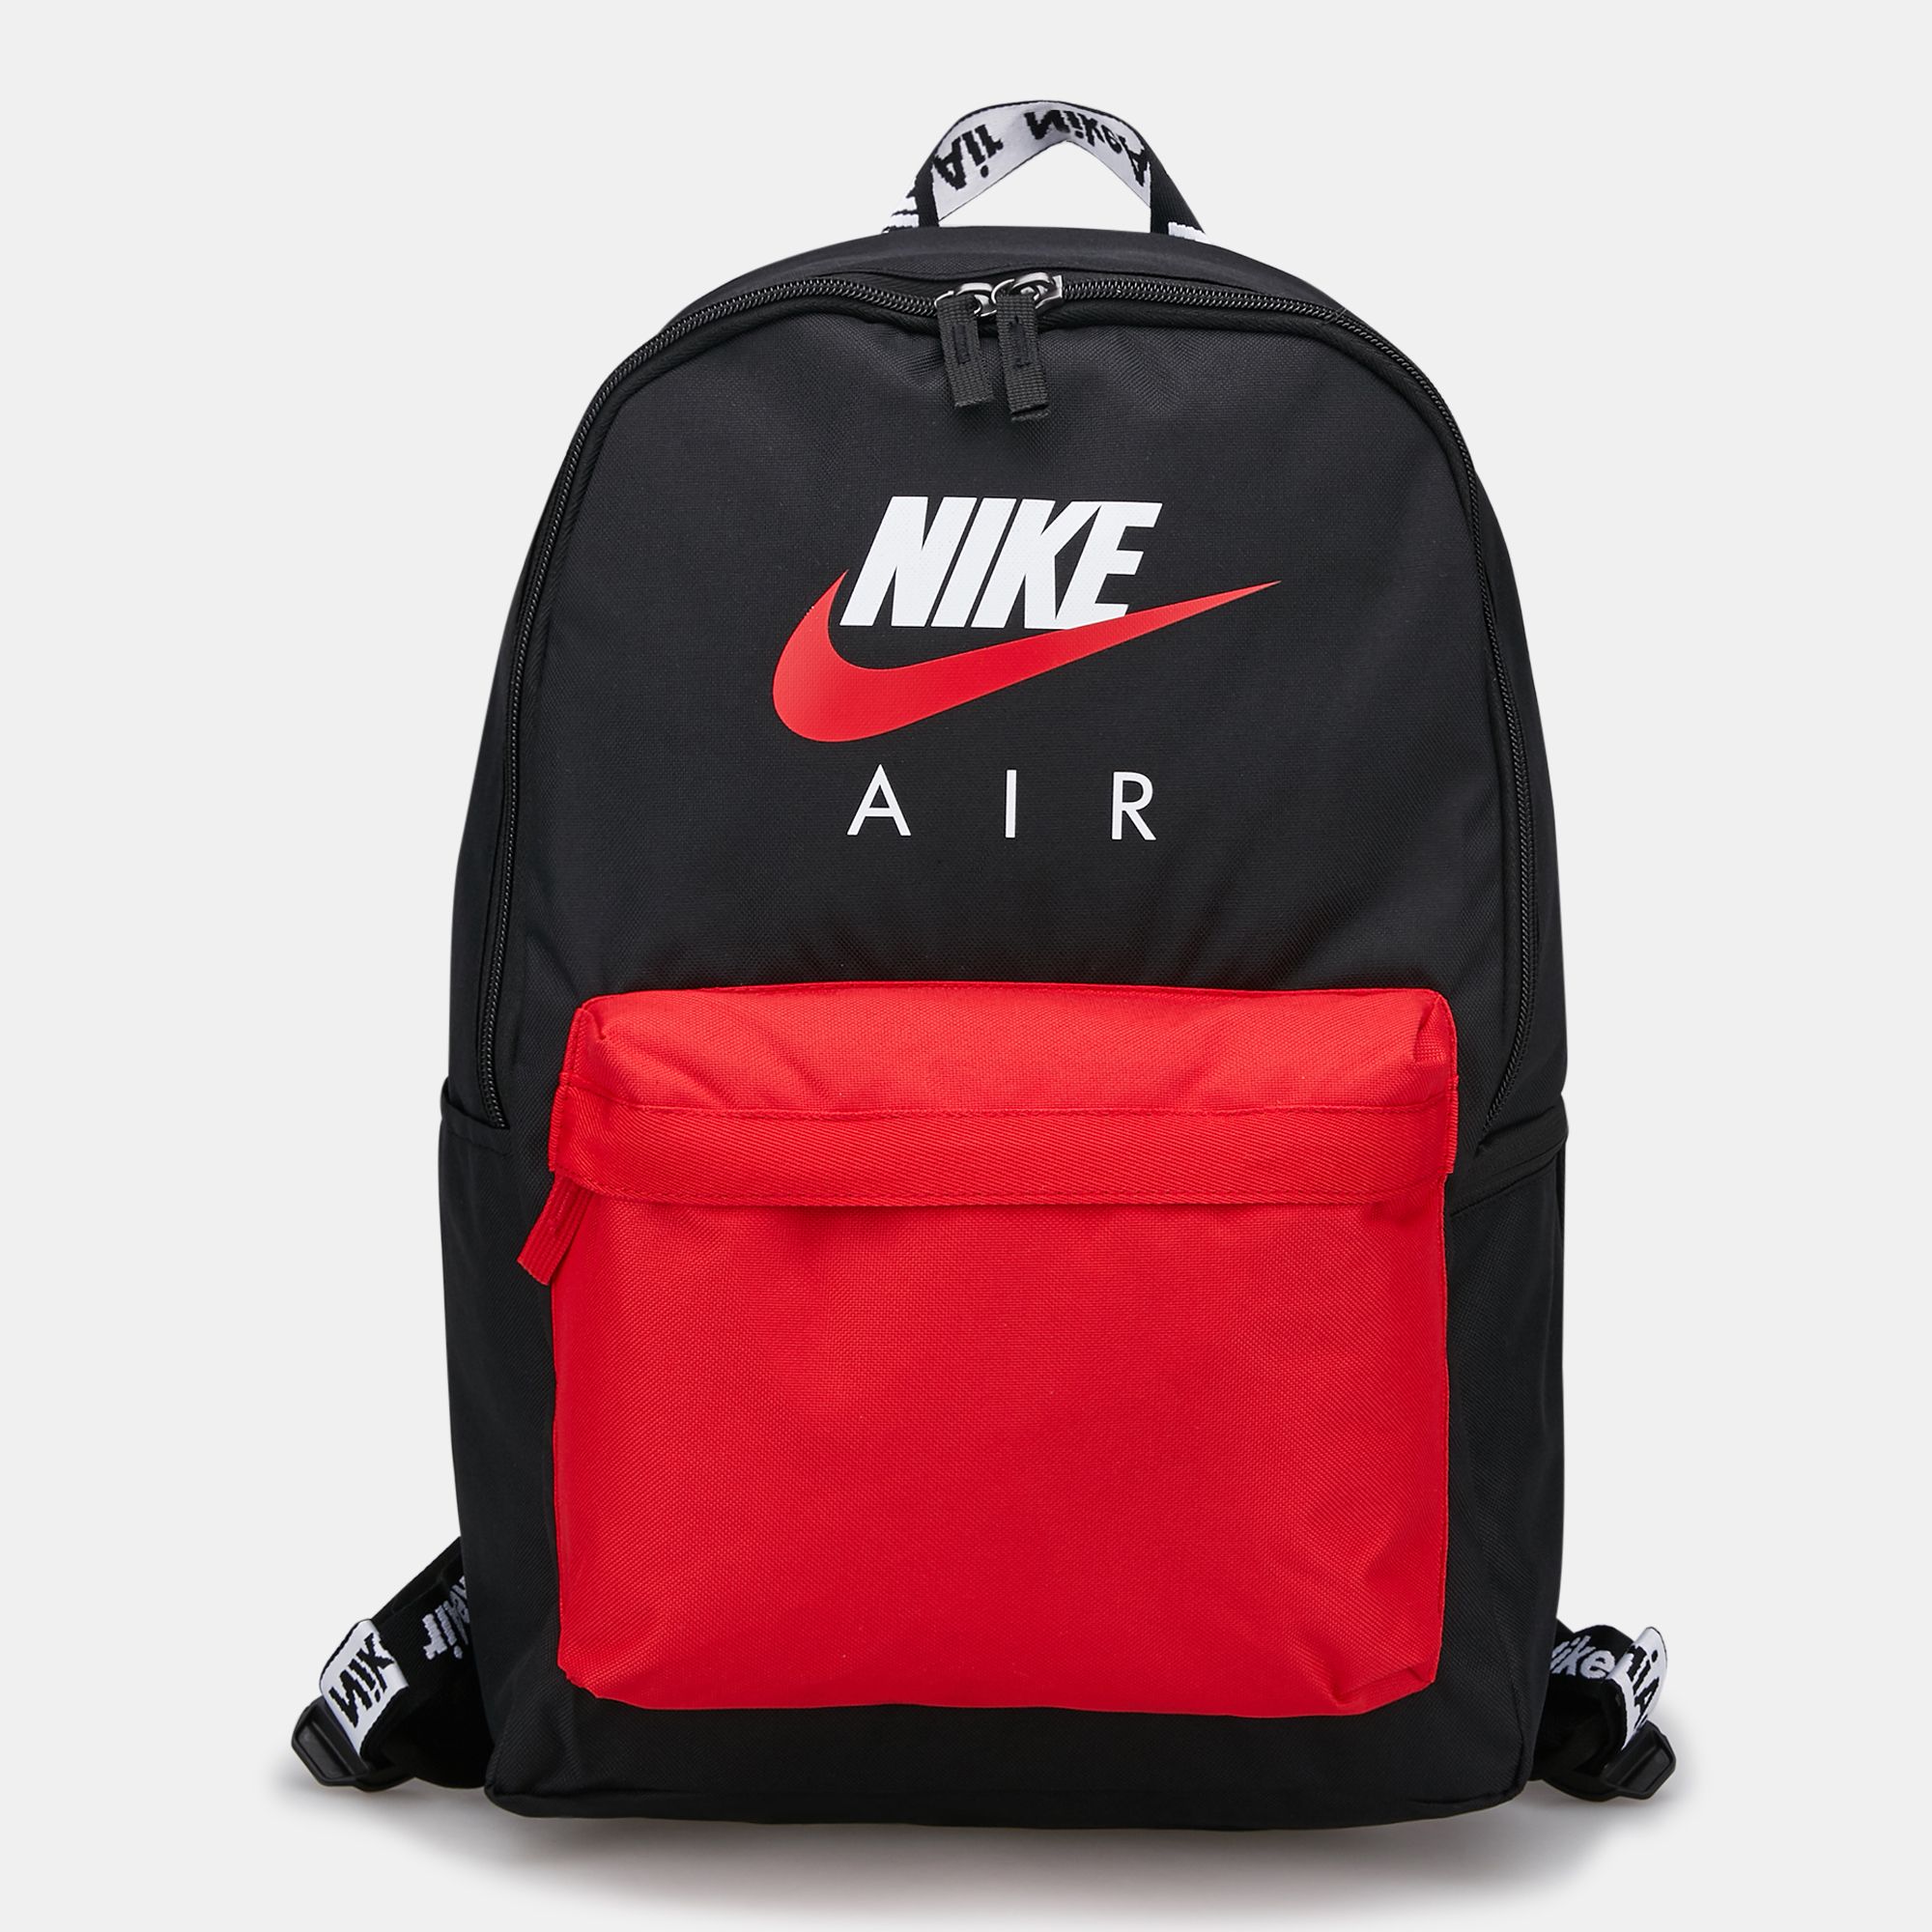 nike air bag black and red